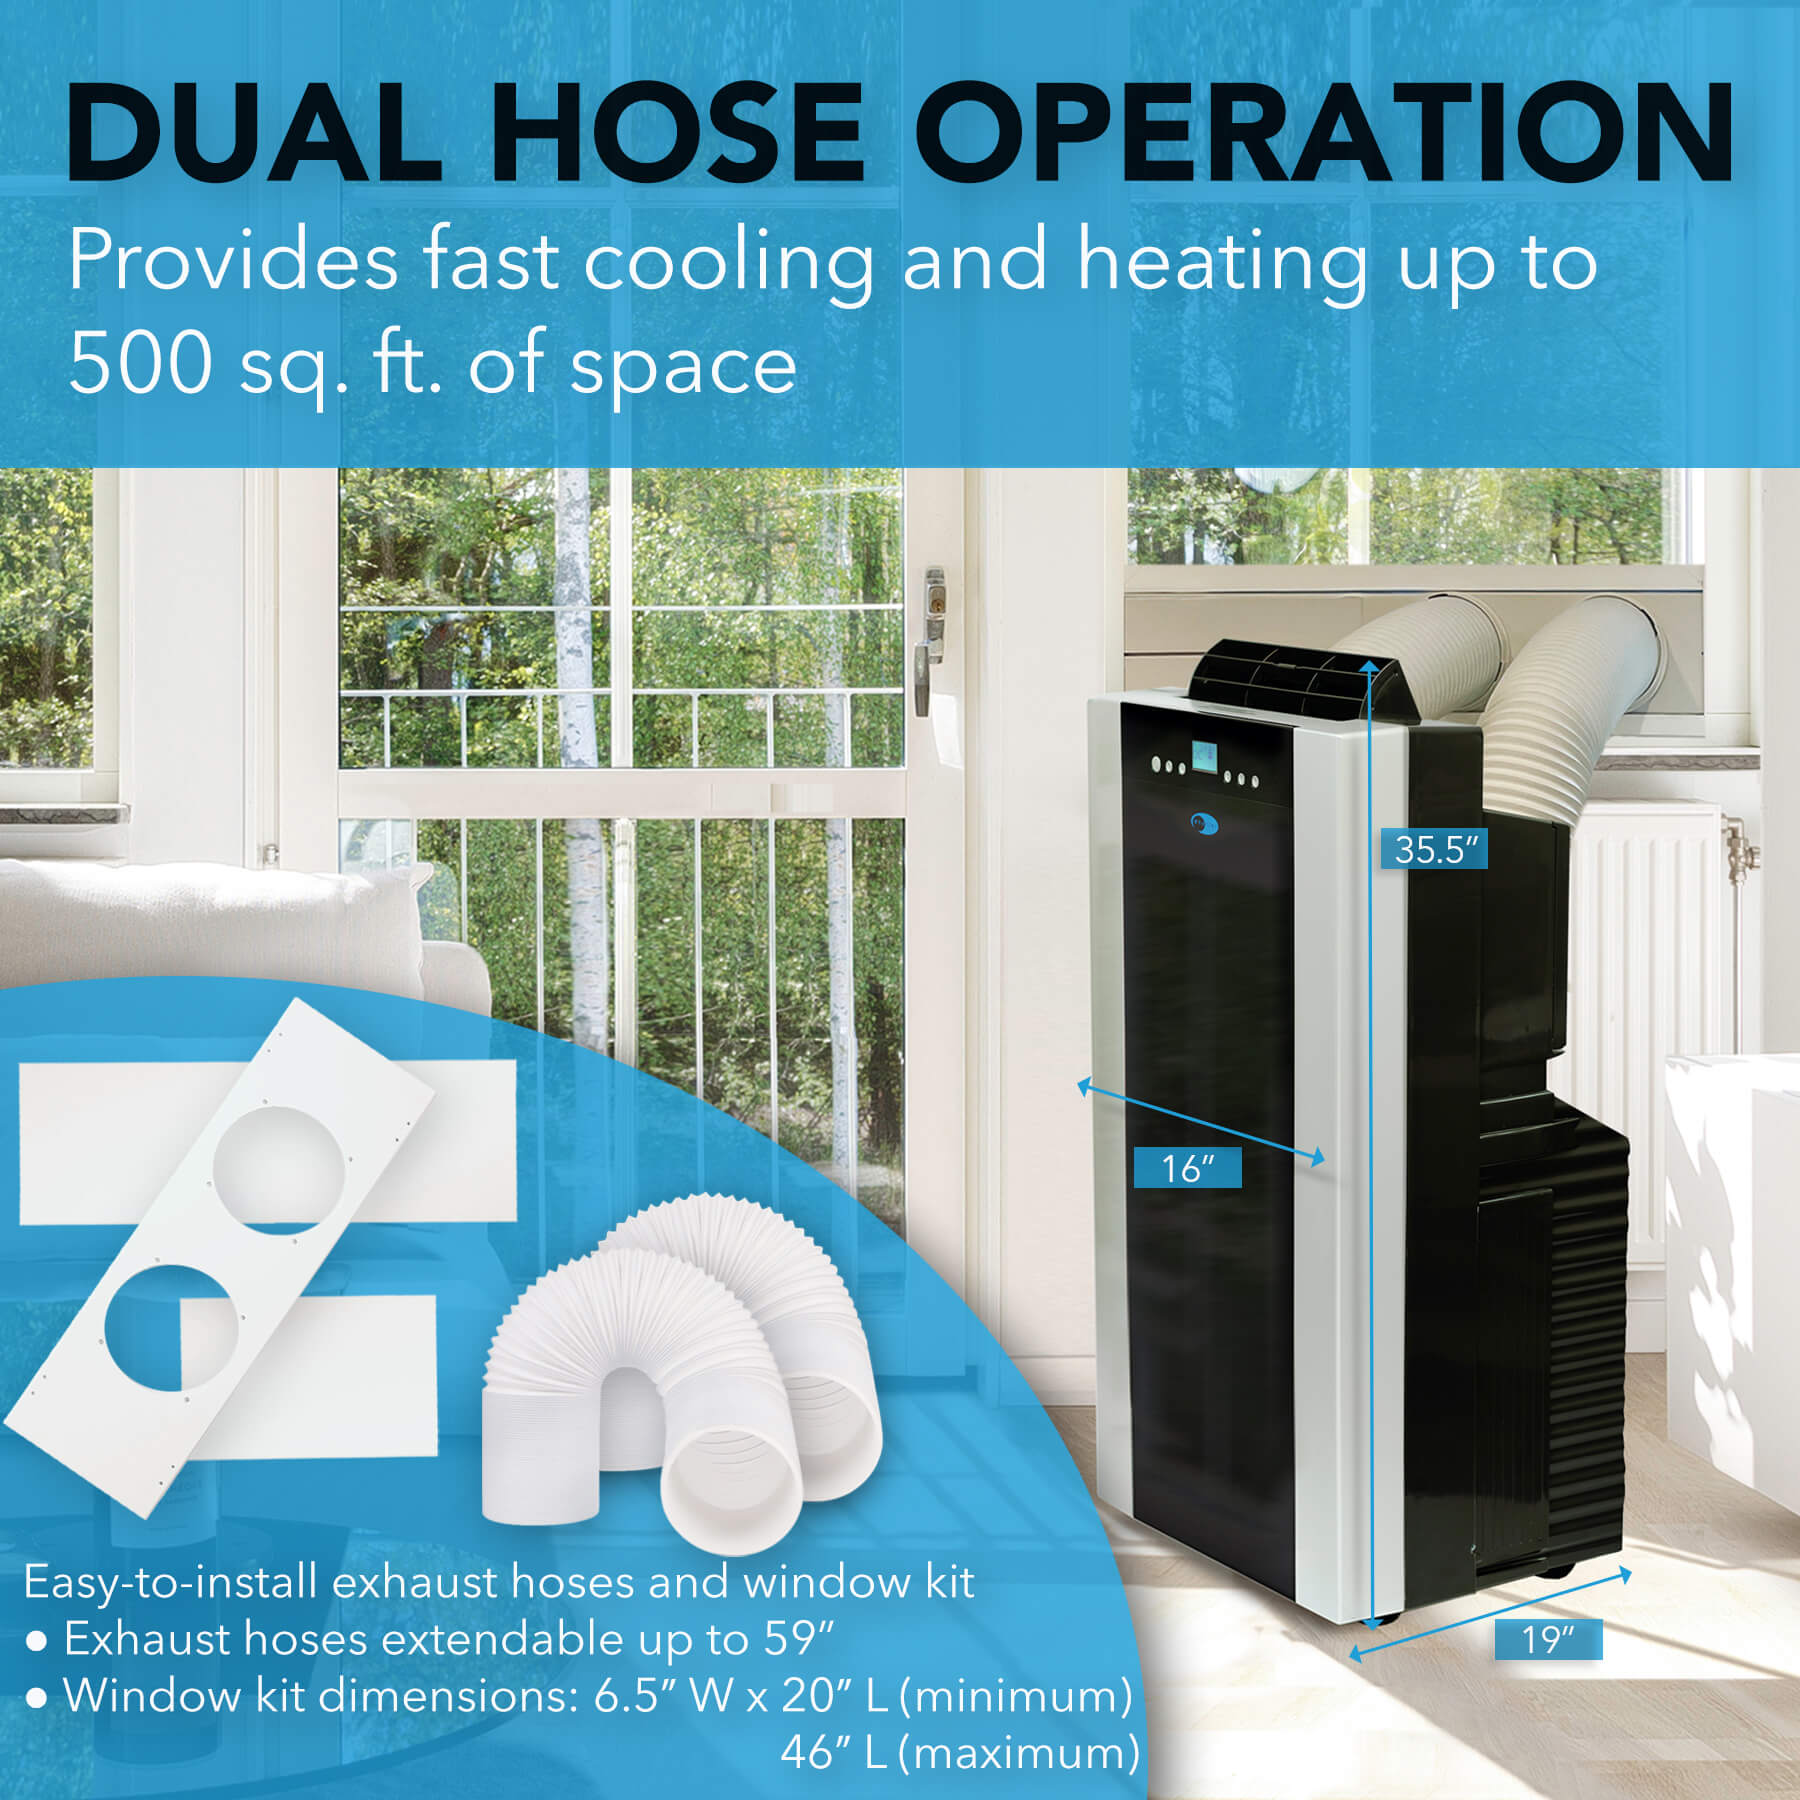 3-in-1 Connected Portable Room Air Conditioner 14,000 BTU (ASHRAE